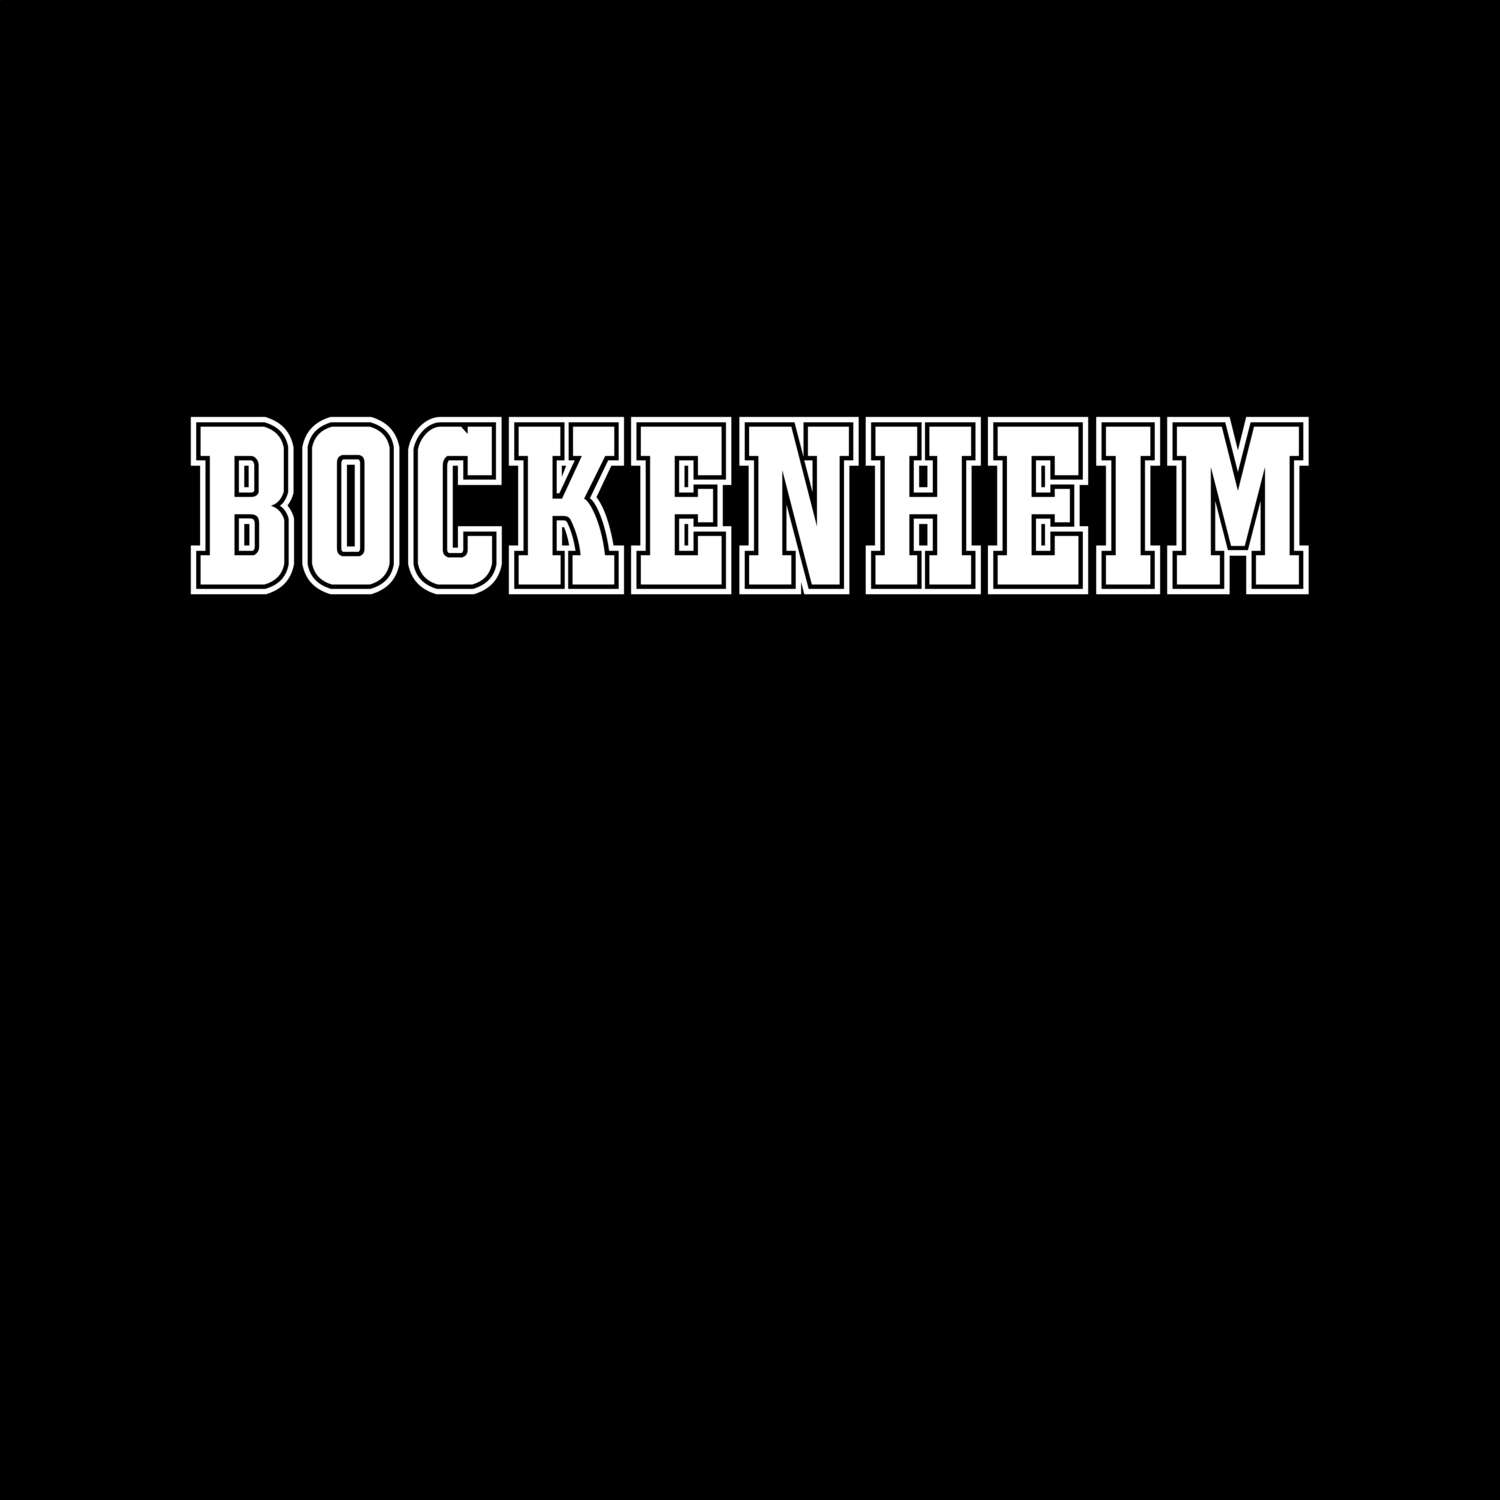 Bockenheim T-Shirt »Classic«